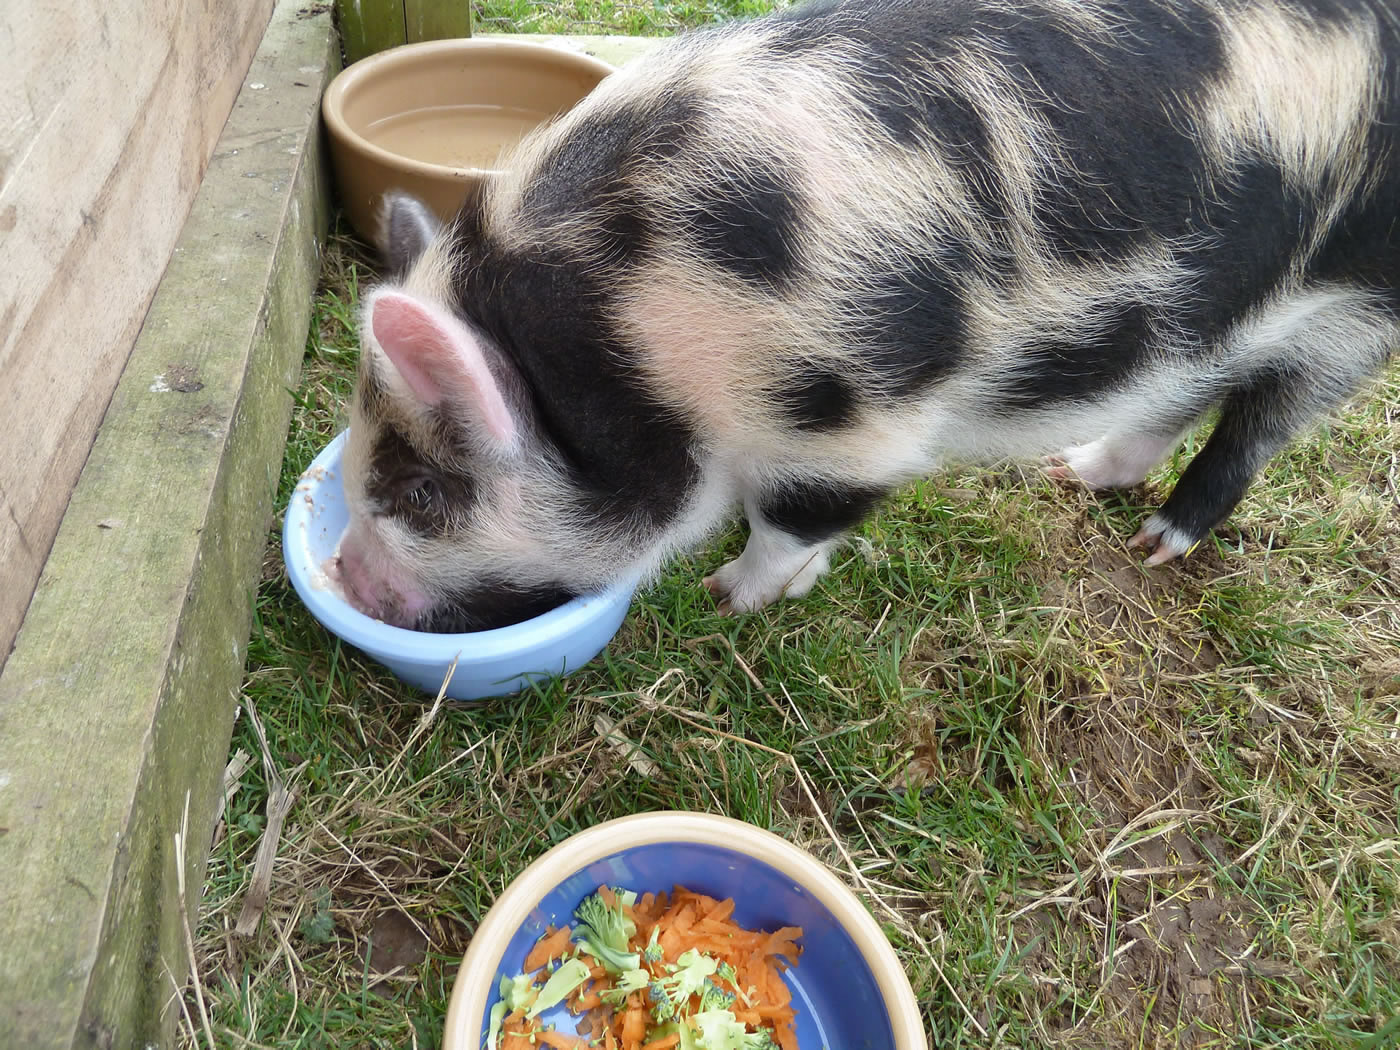 Picture of pet Kunekune pig eating his dinner outdoors.